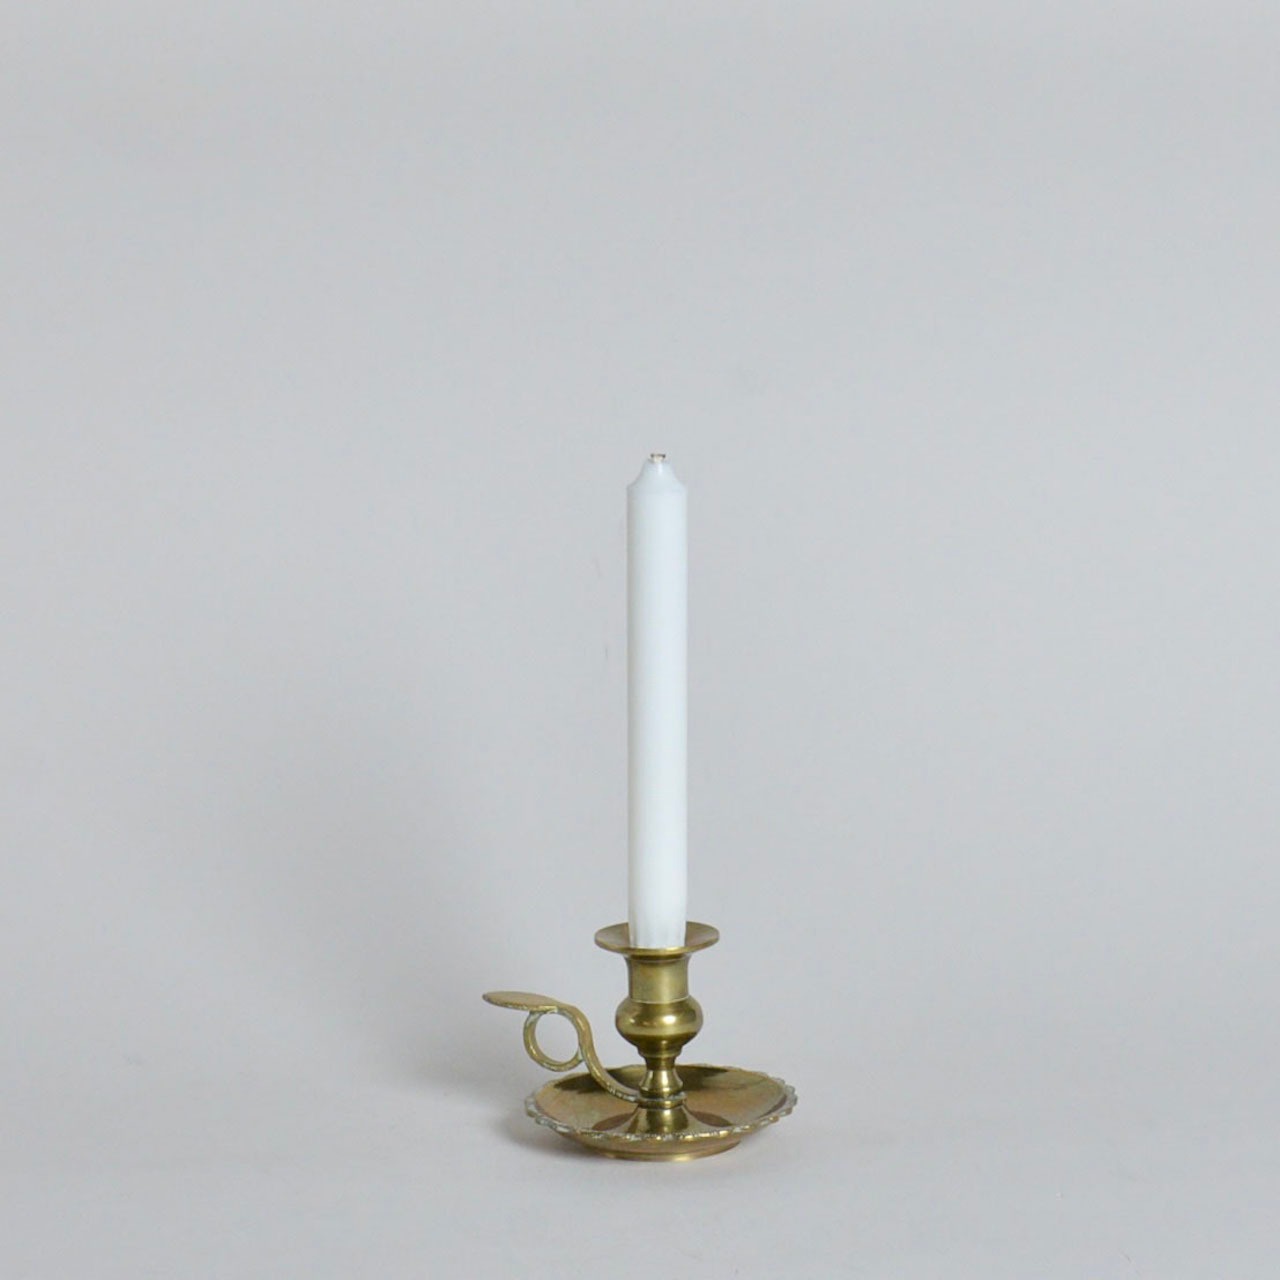 Candle Stand / キャンドル スタンド【A】〈 燭台 / ロウソク / オブジェ / ディスプレイ/ 真鍮〉SB2105-0049